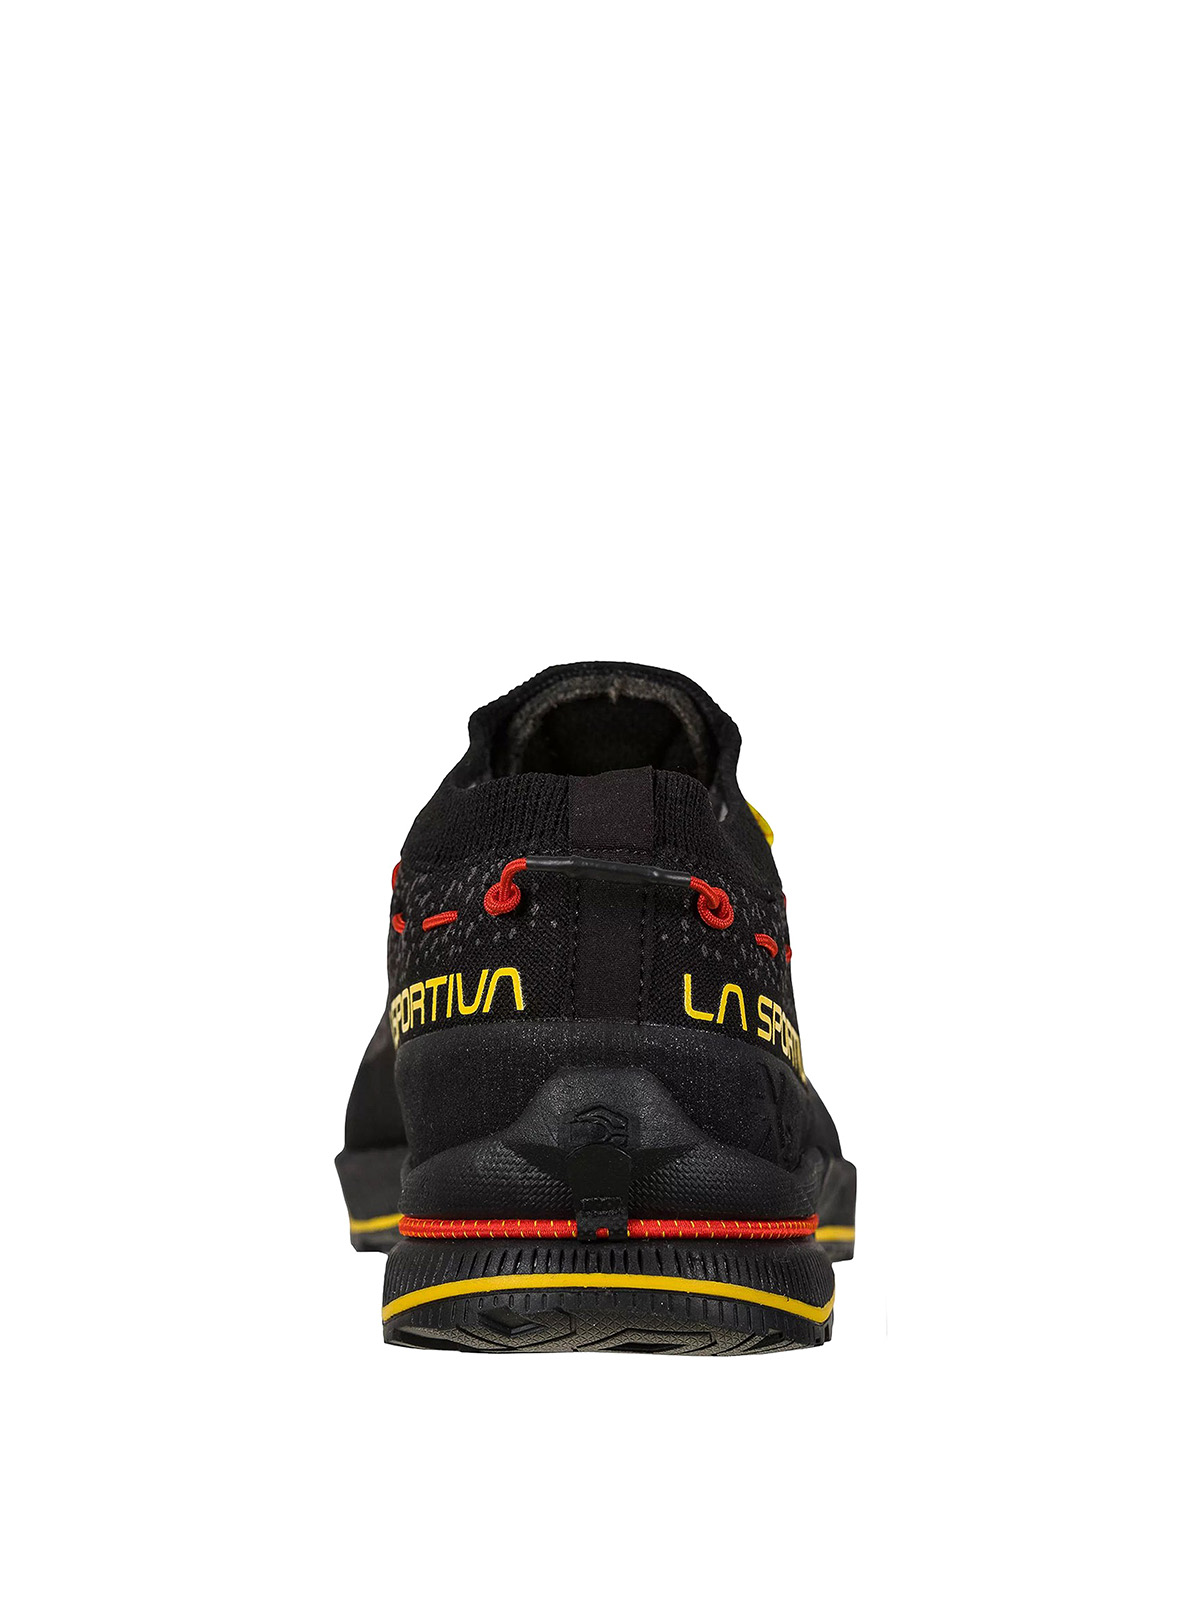 Shop La Sportiva Zapatillas - Tx2 Evo In Black